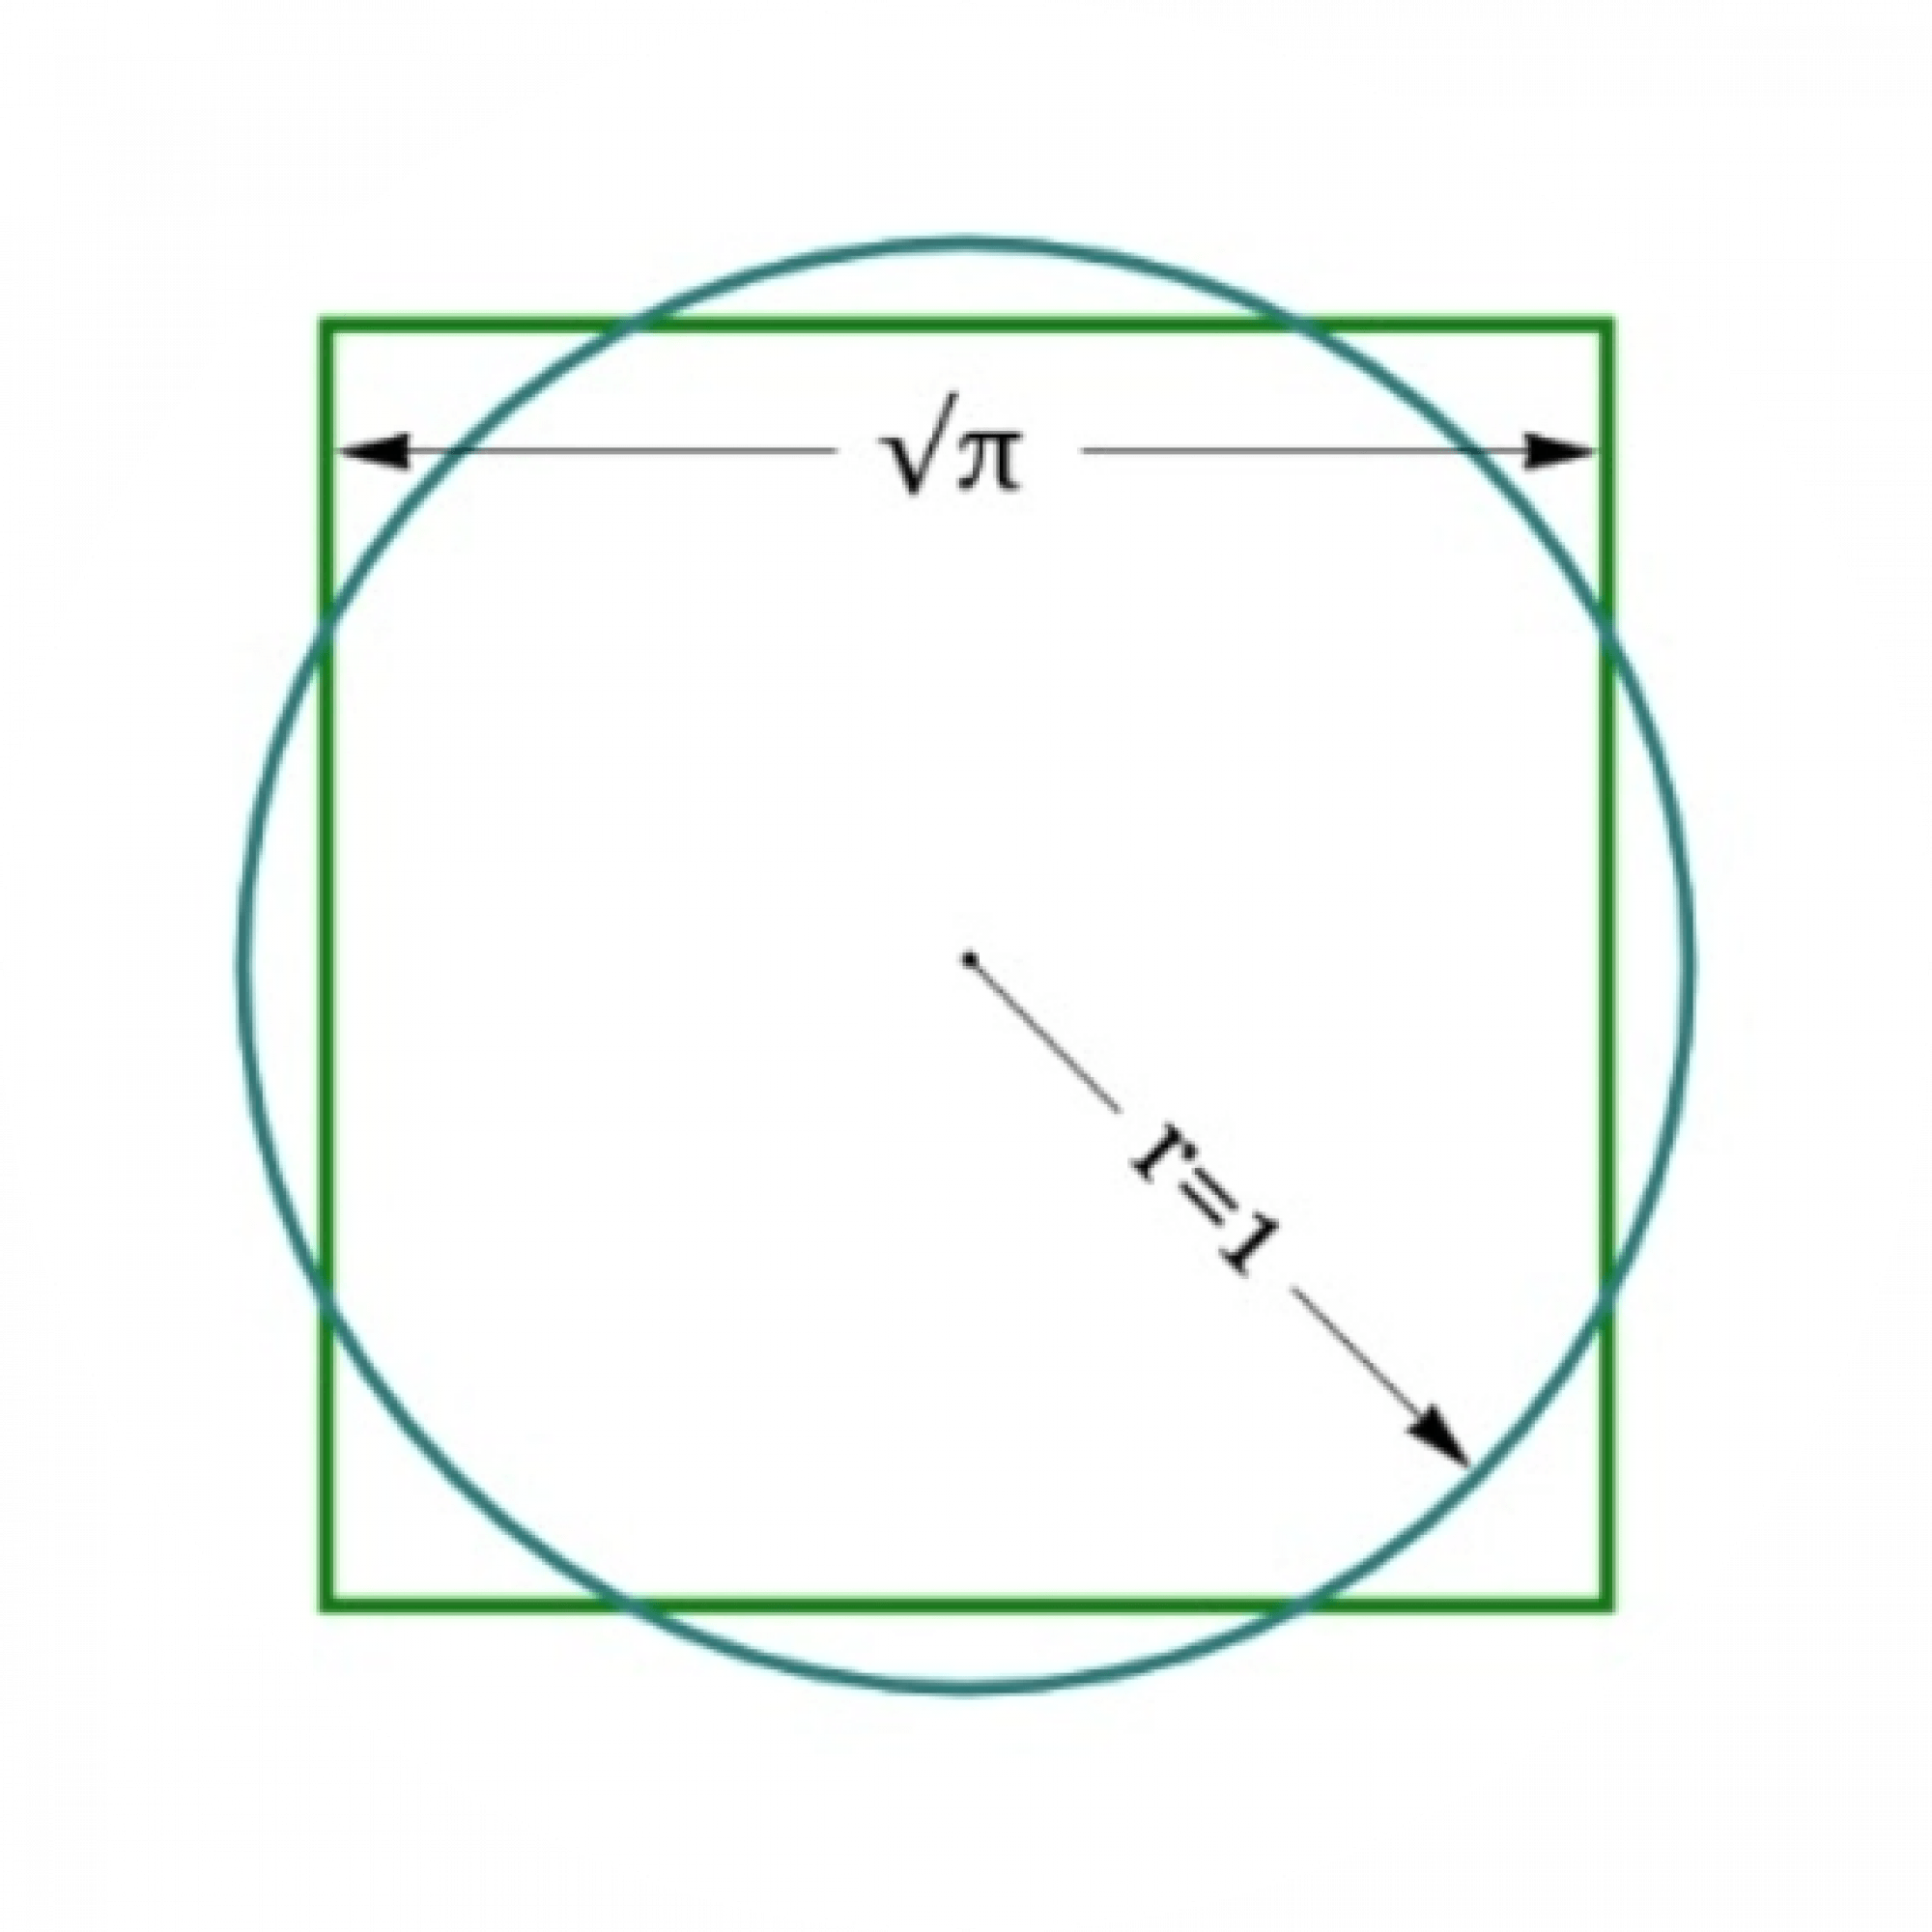 Geometrische Zeichnung eines Kreises in einem Quadrat.